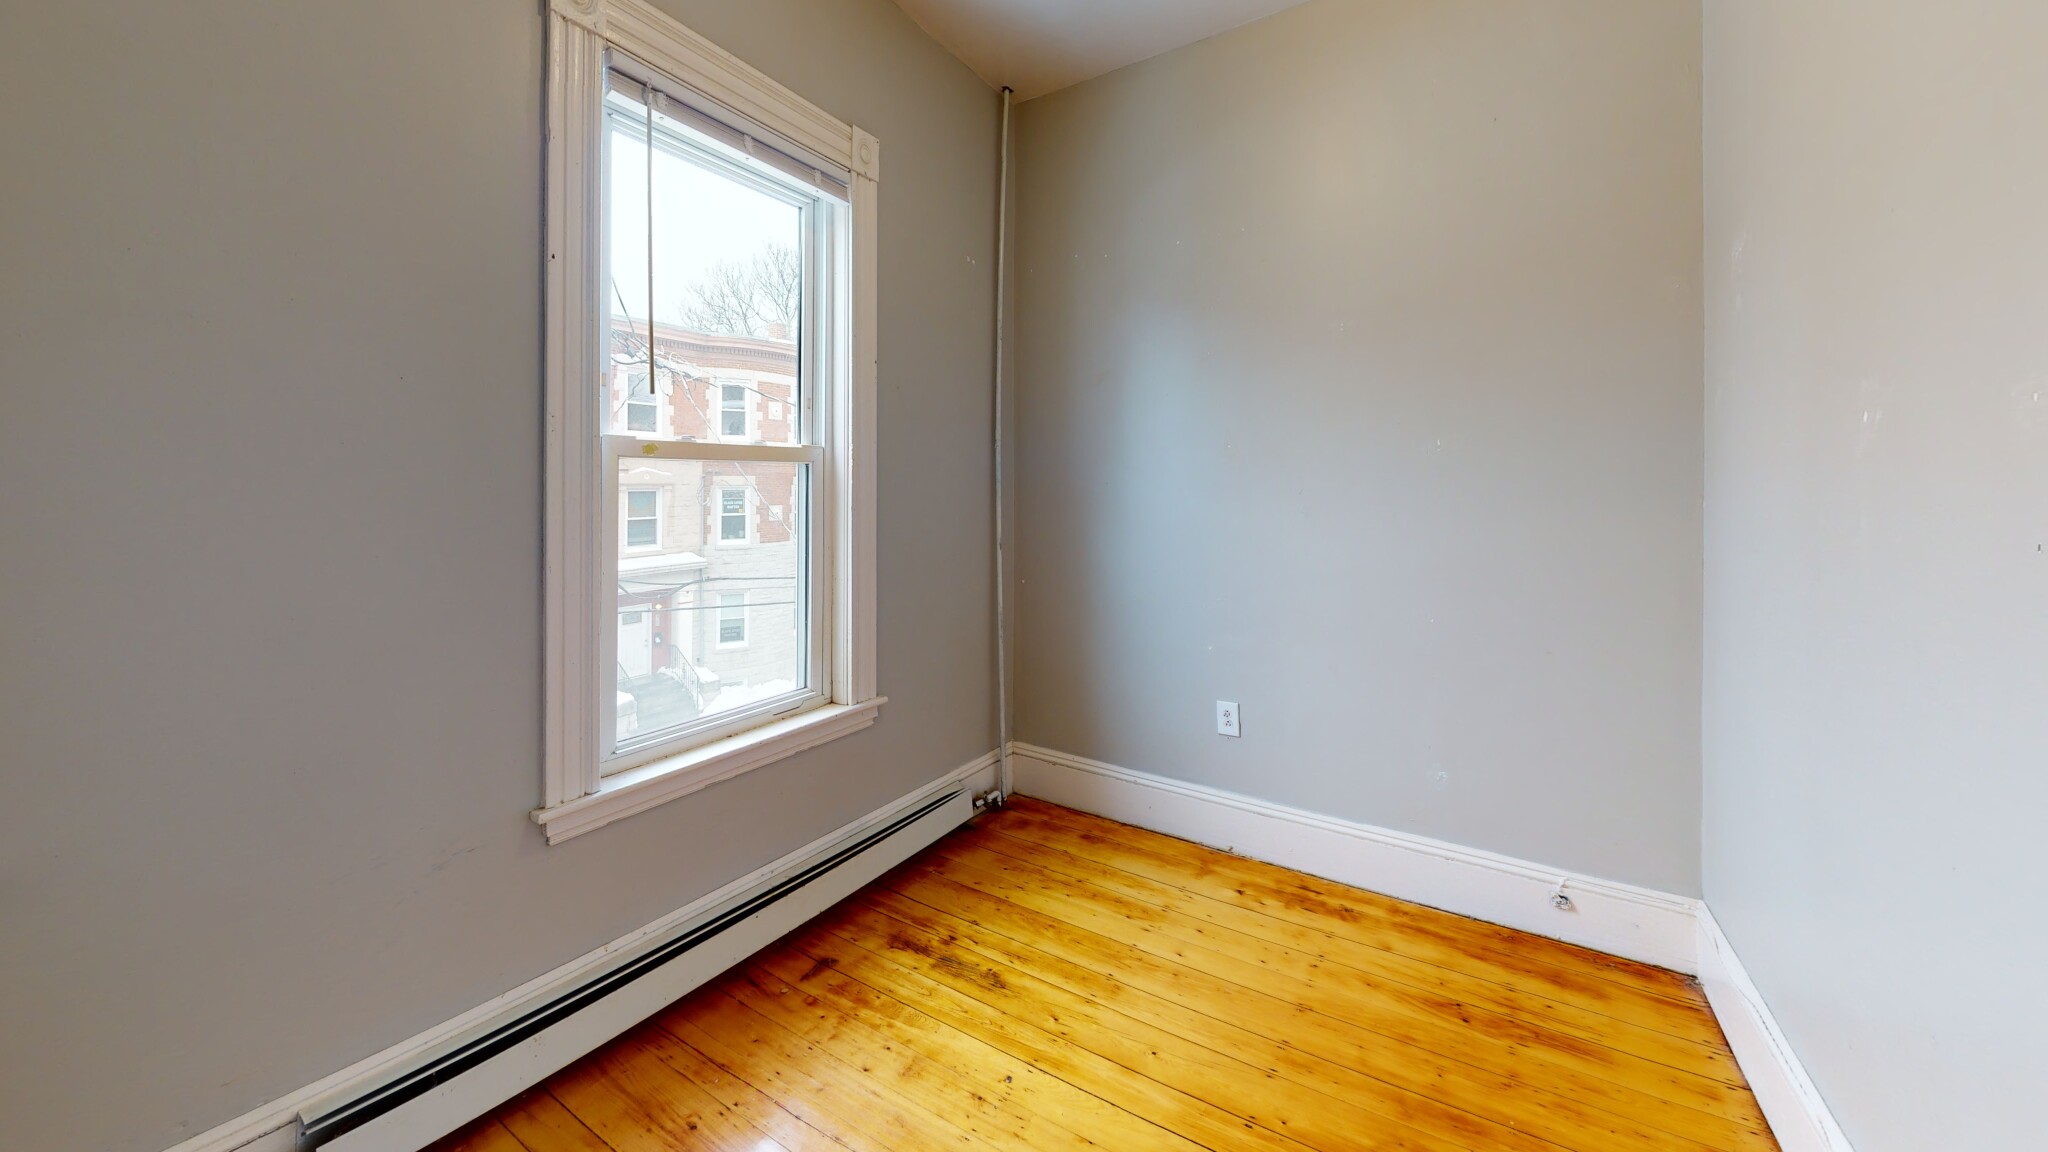 Photos of apartment on Boylston St.,Boston MA 02130